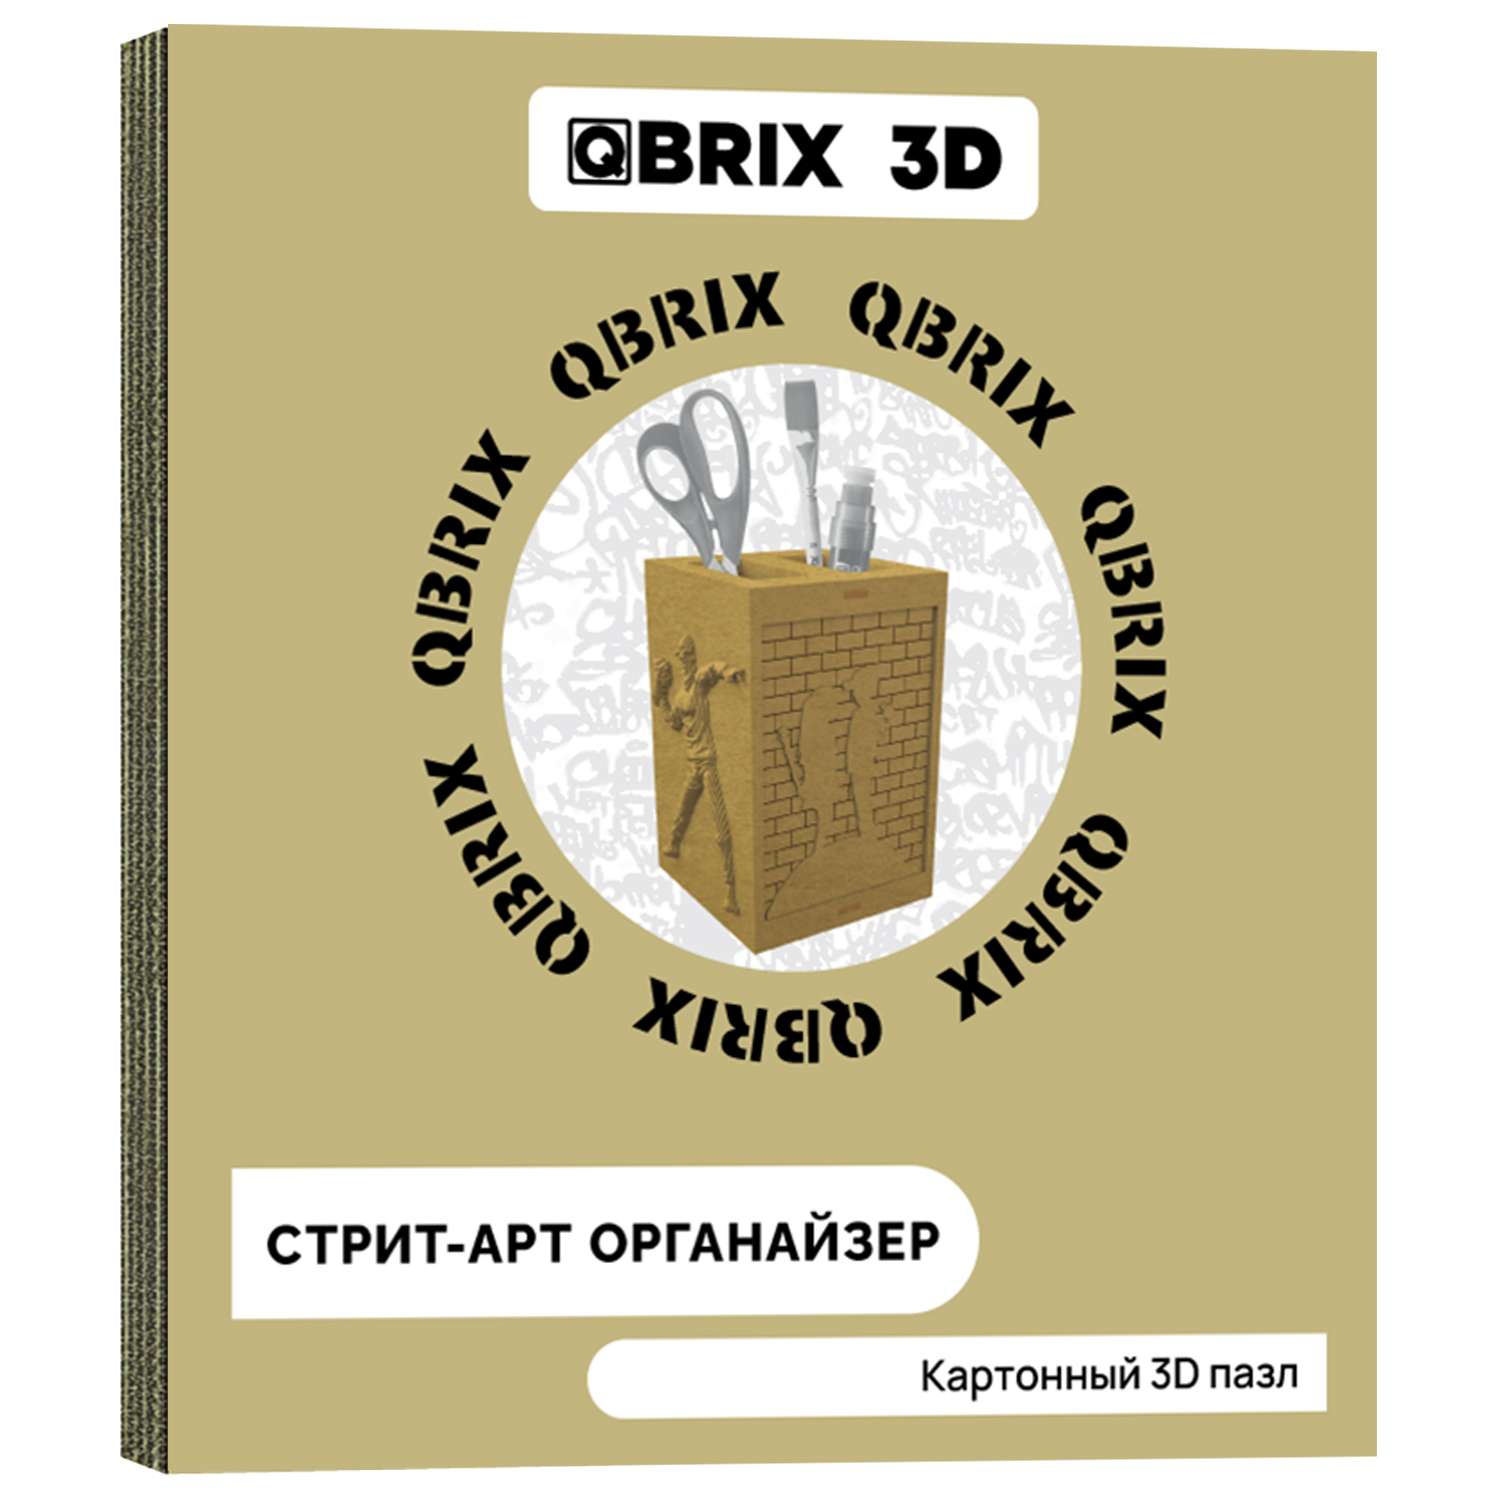 Конструктор QBRIX 3D картонный Стрит-Арт органайзер 20007 20007 - фото 1